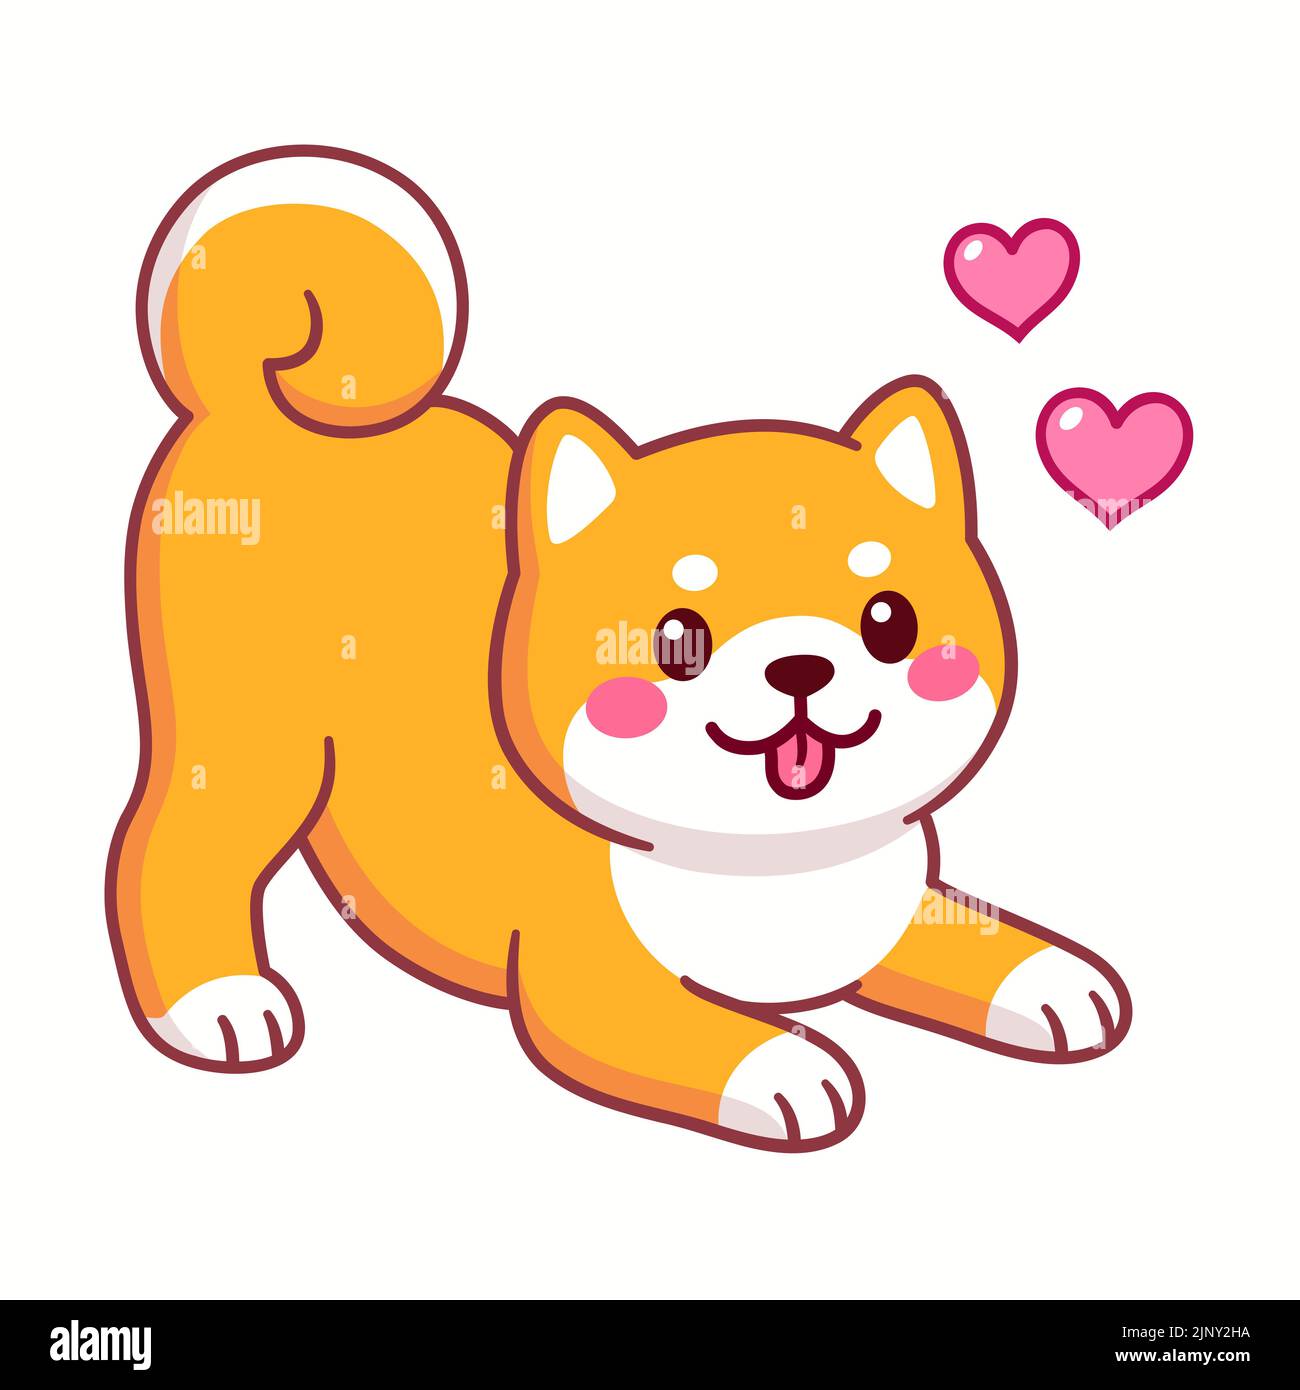 Joli dessin animé Shiba Inu dans une posture ludique avec les coeurs. Langage corporel de chien excité. Illustration amusante de clip d'art vectoriel. Illustration de Vecteur